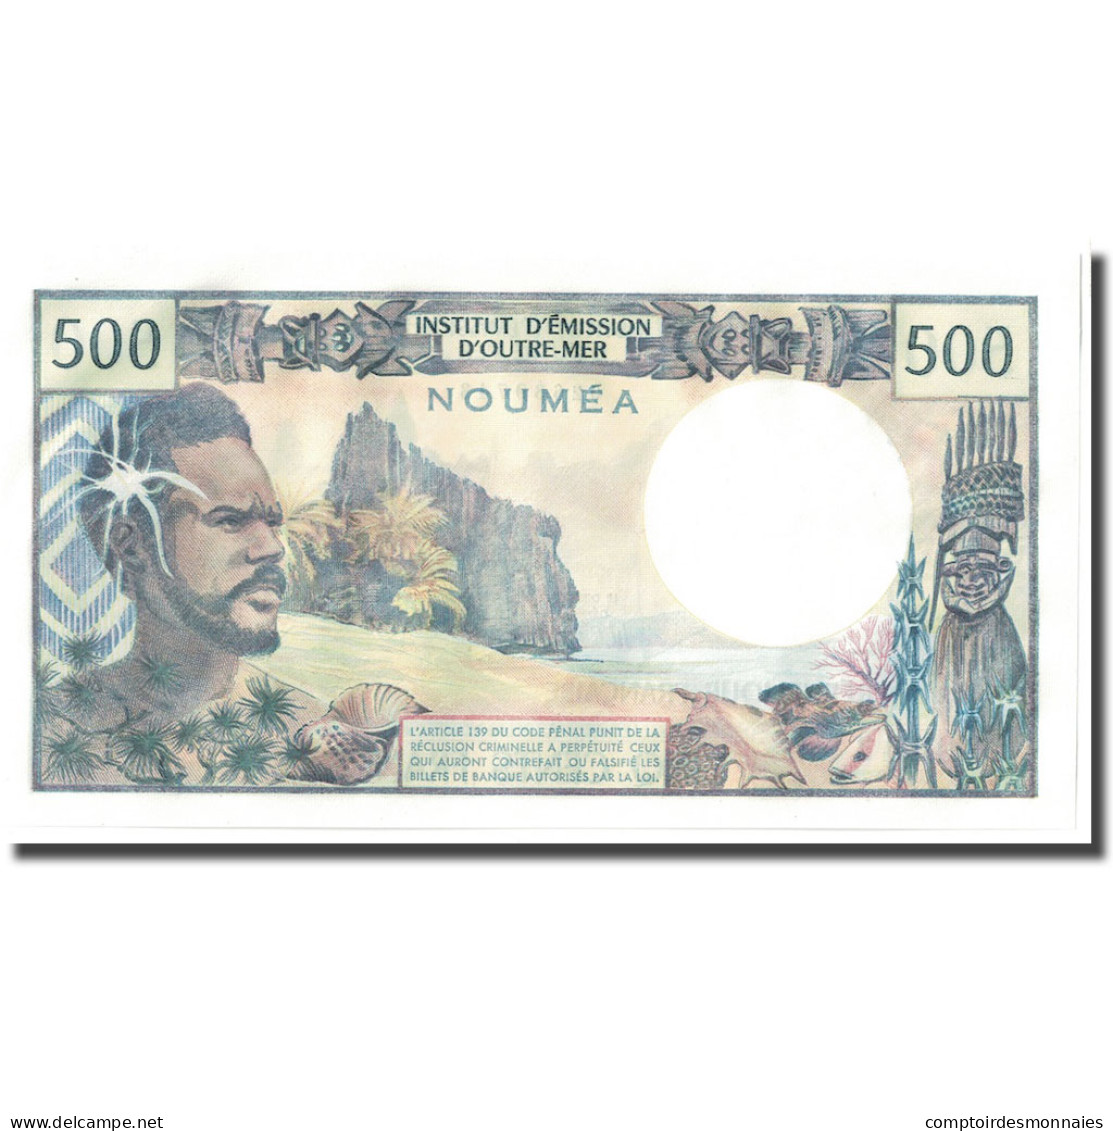 Billet, Nouvelle-Calédonie, 500 Francs, Undated (1969-92), KM:60e, NEUF - Nouvelle-Calédonie 1873-1985